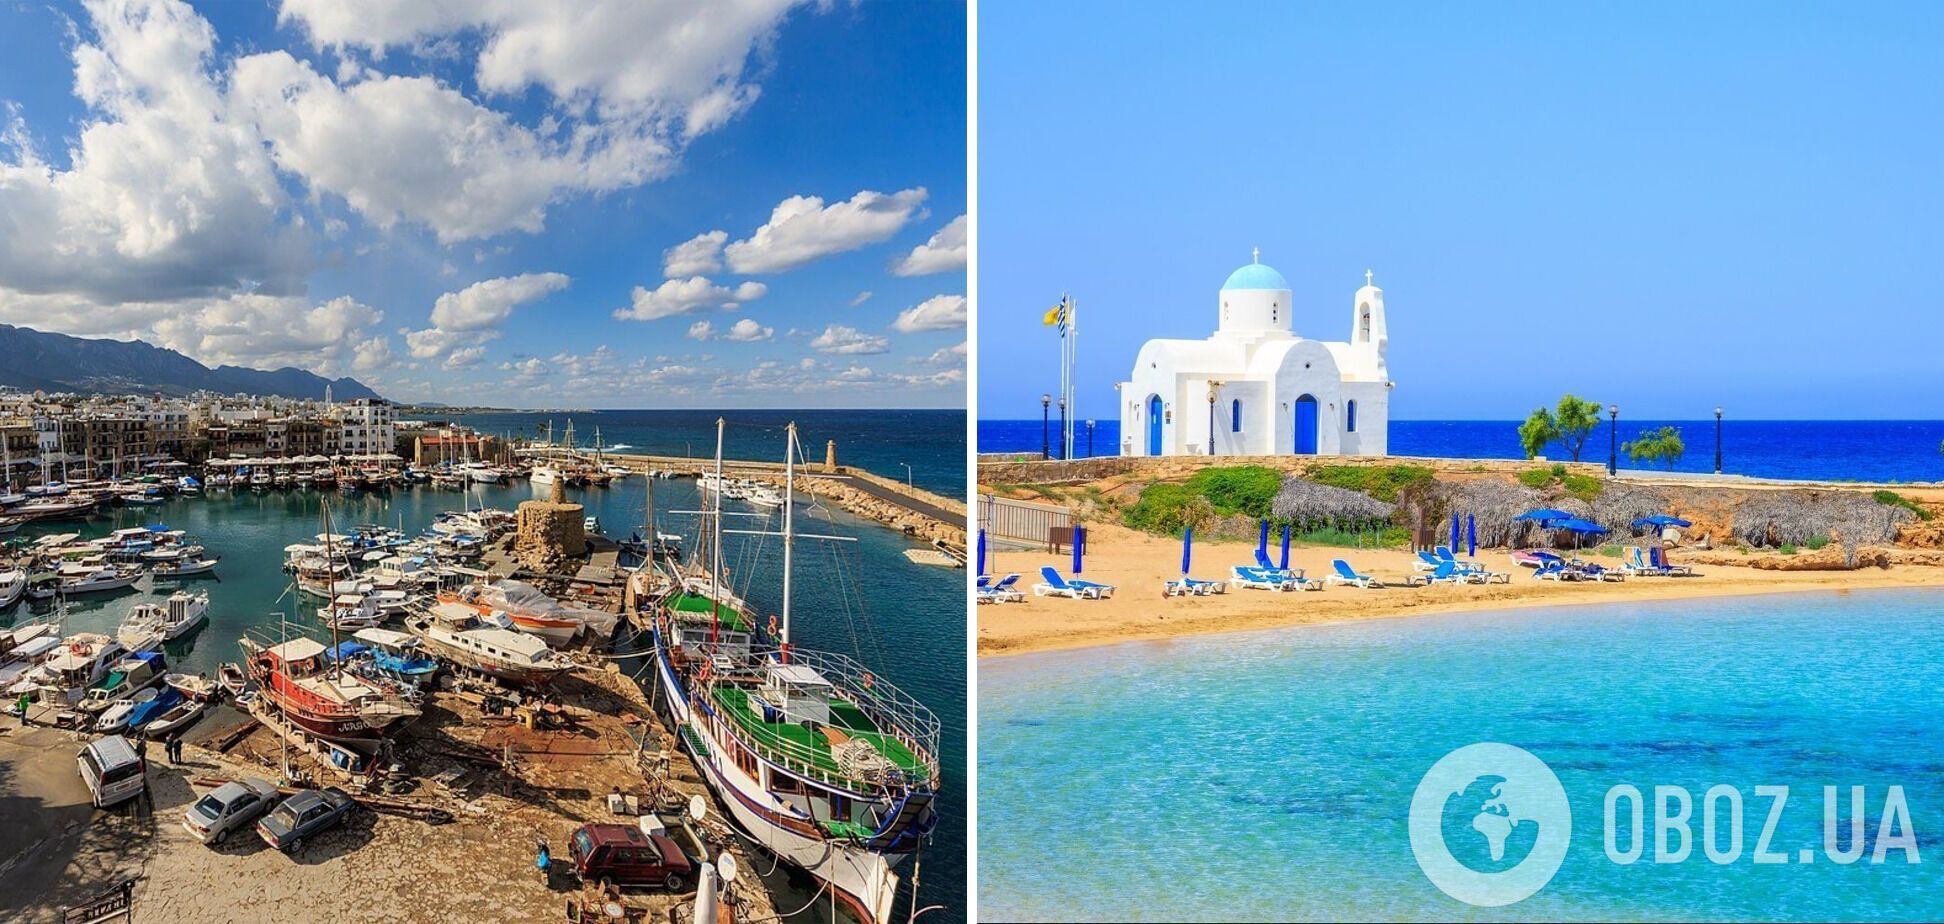 Как выглядит популярный курорт для отдыха Кипр